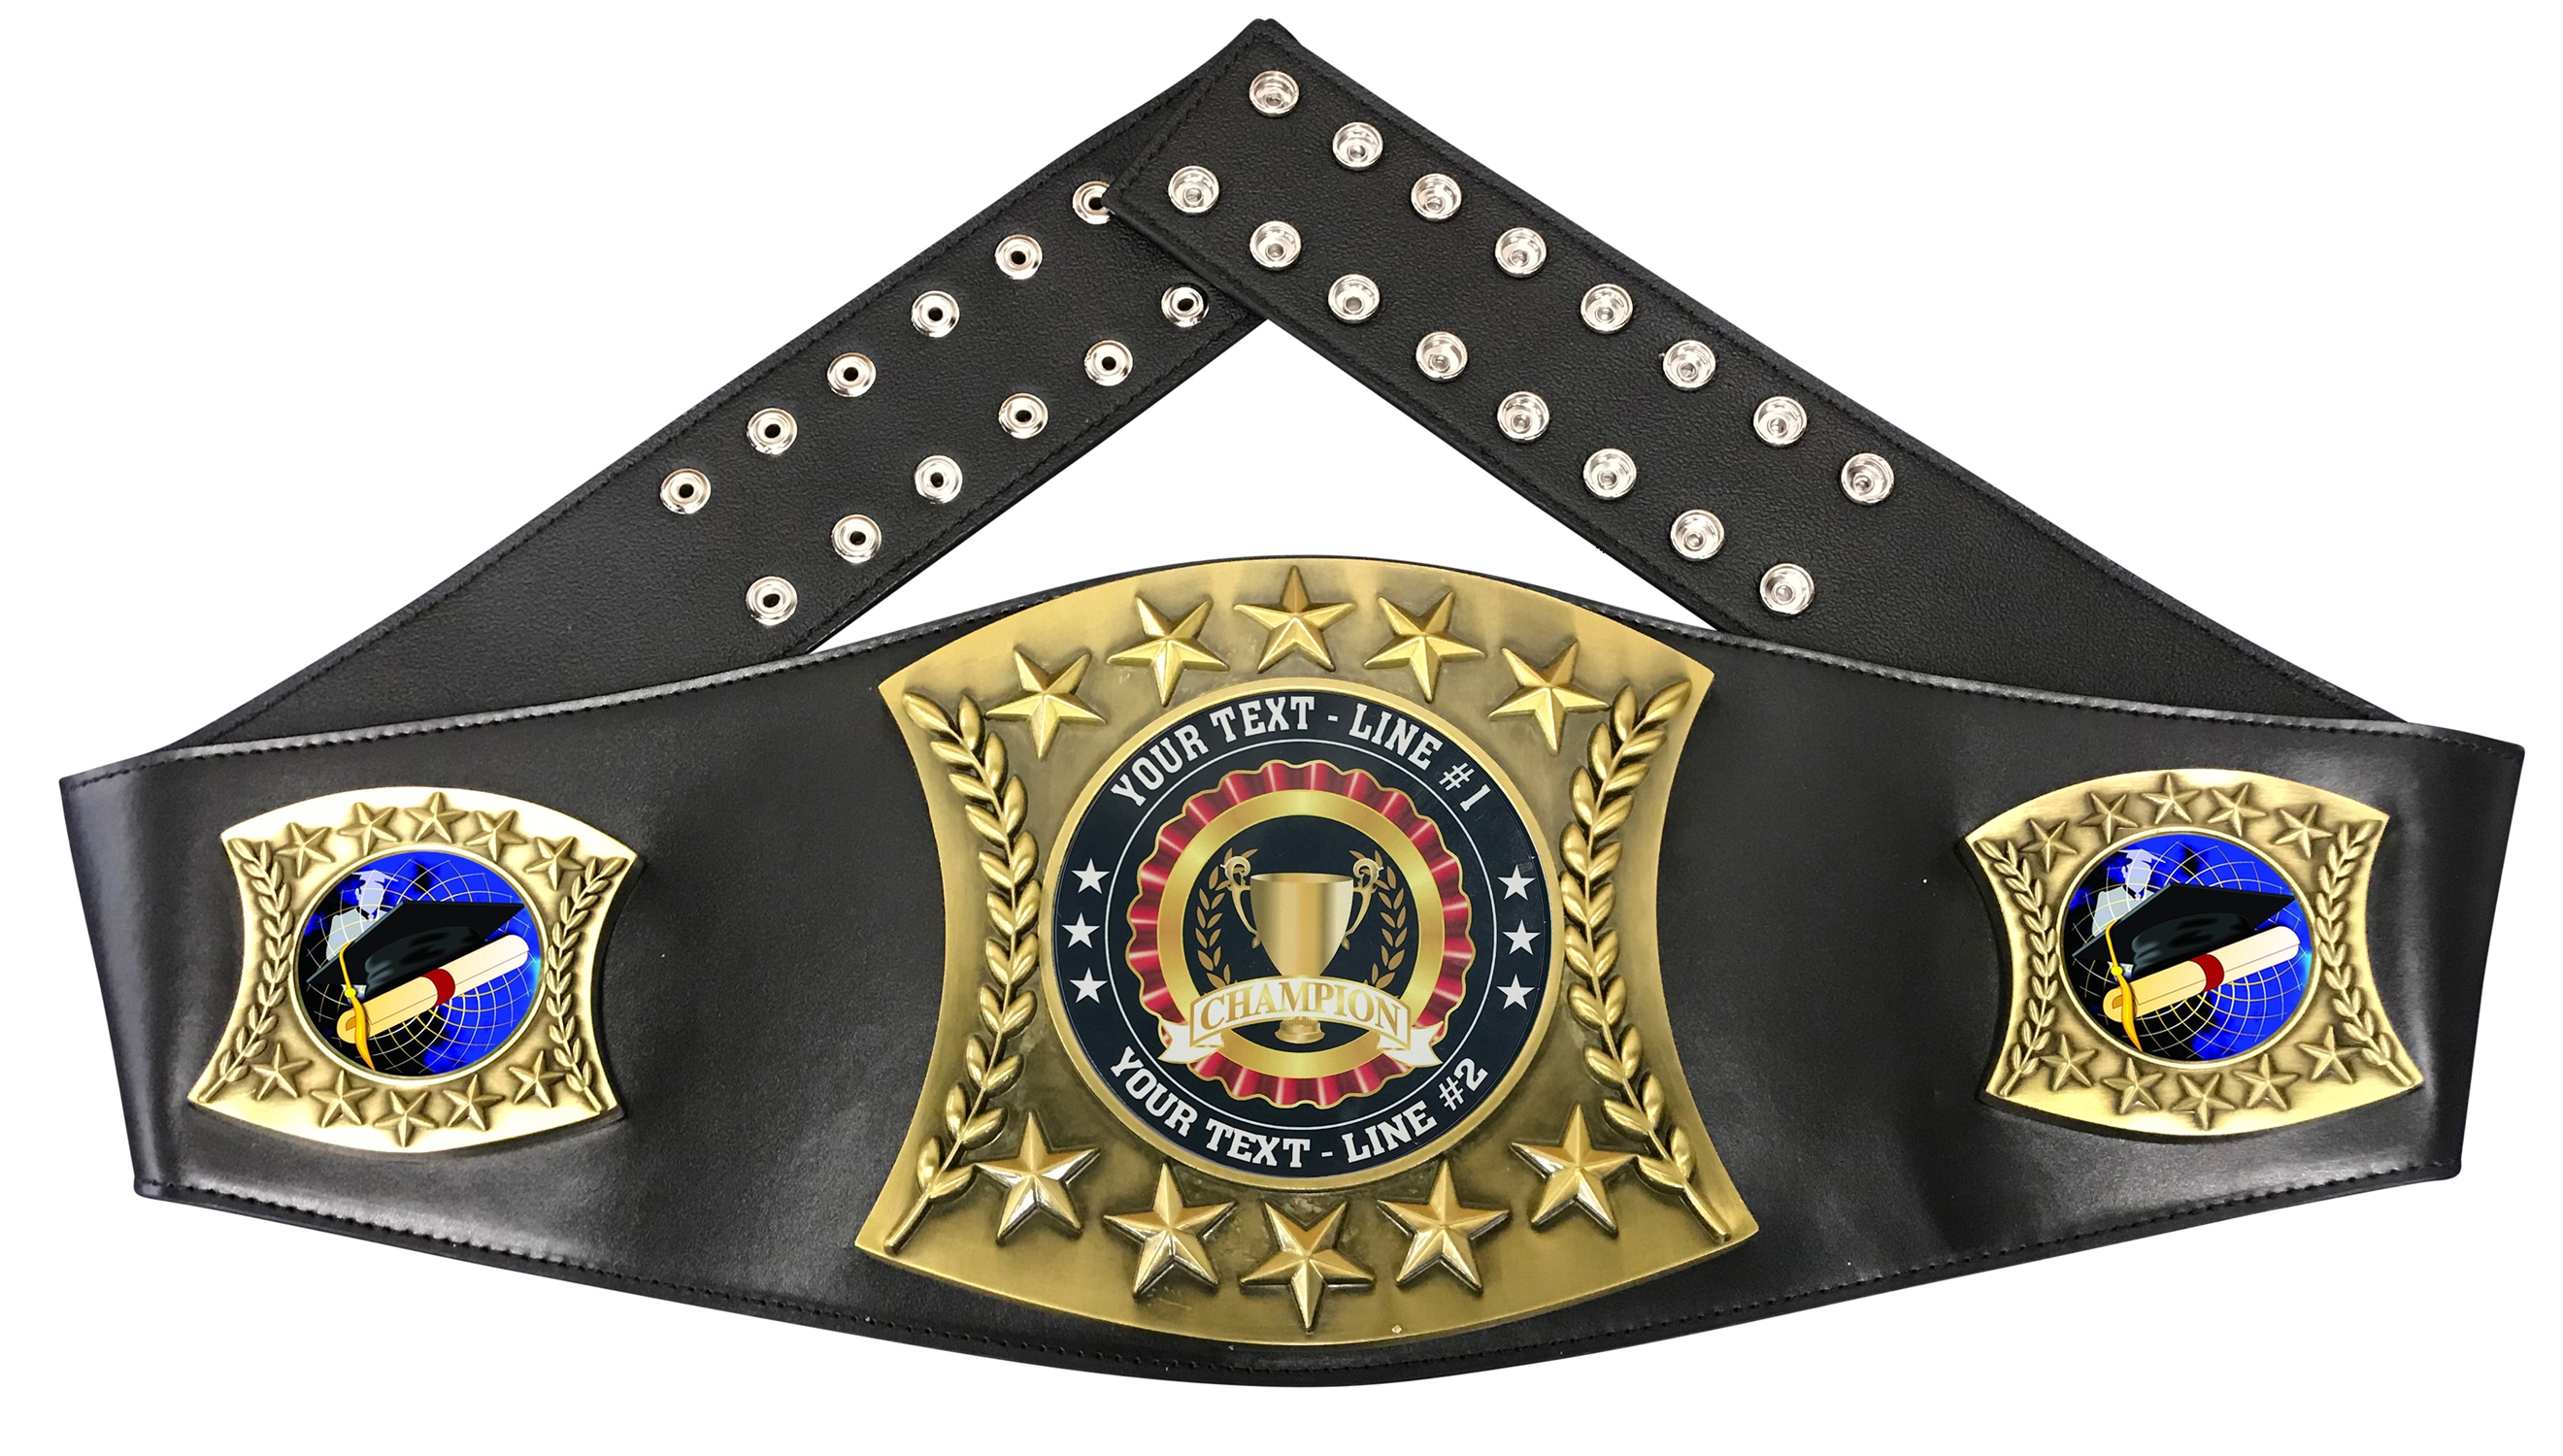 Graduation Personalized Championship Belt